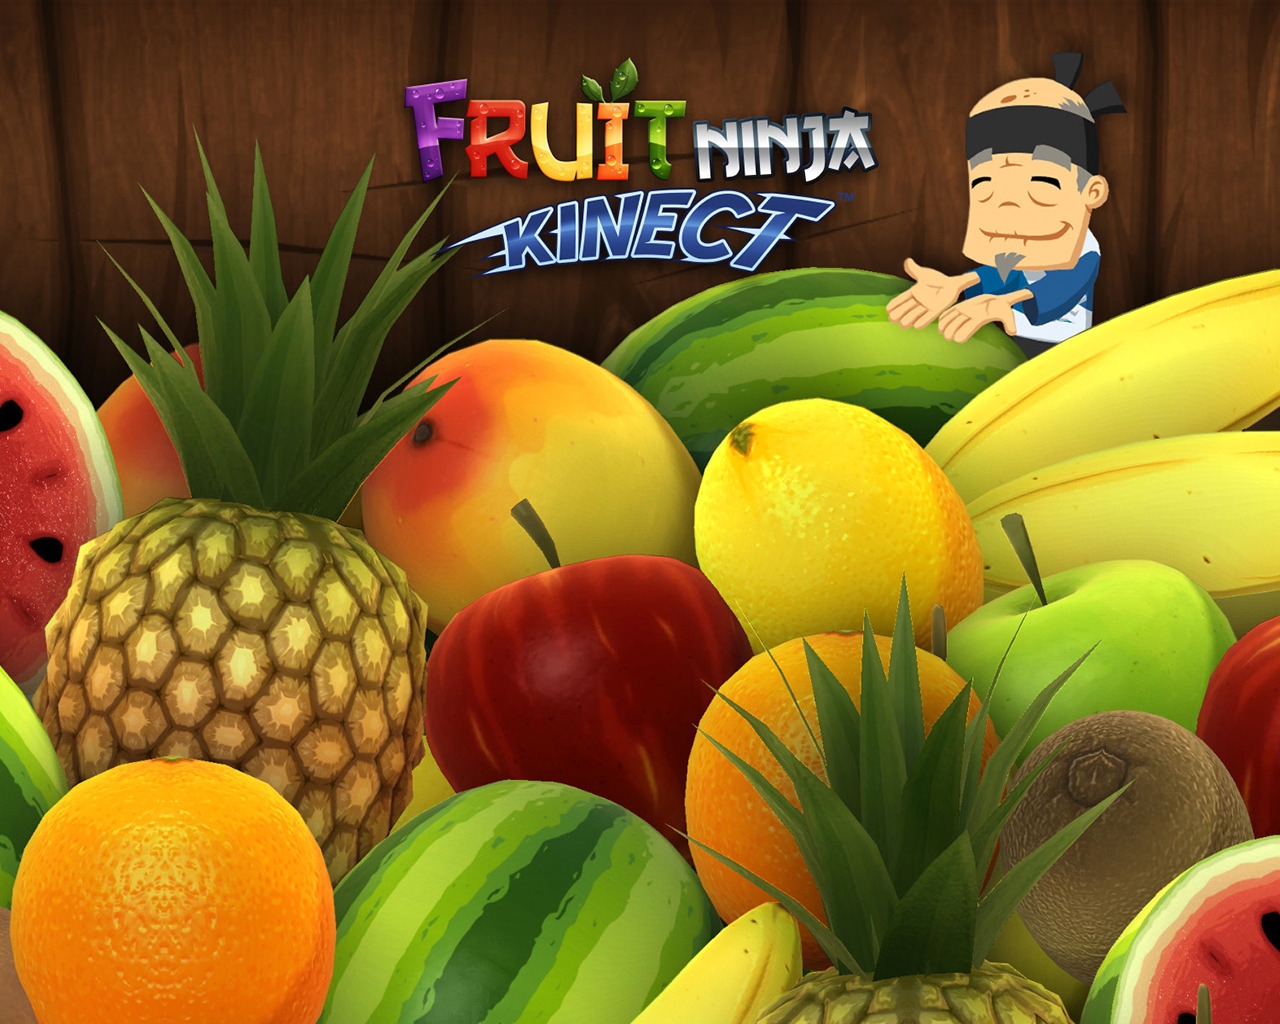 Fruit Ninja Kinect Game for 1280 x 1024 resolution